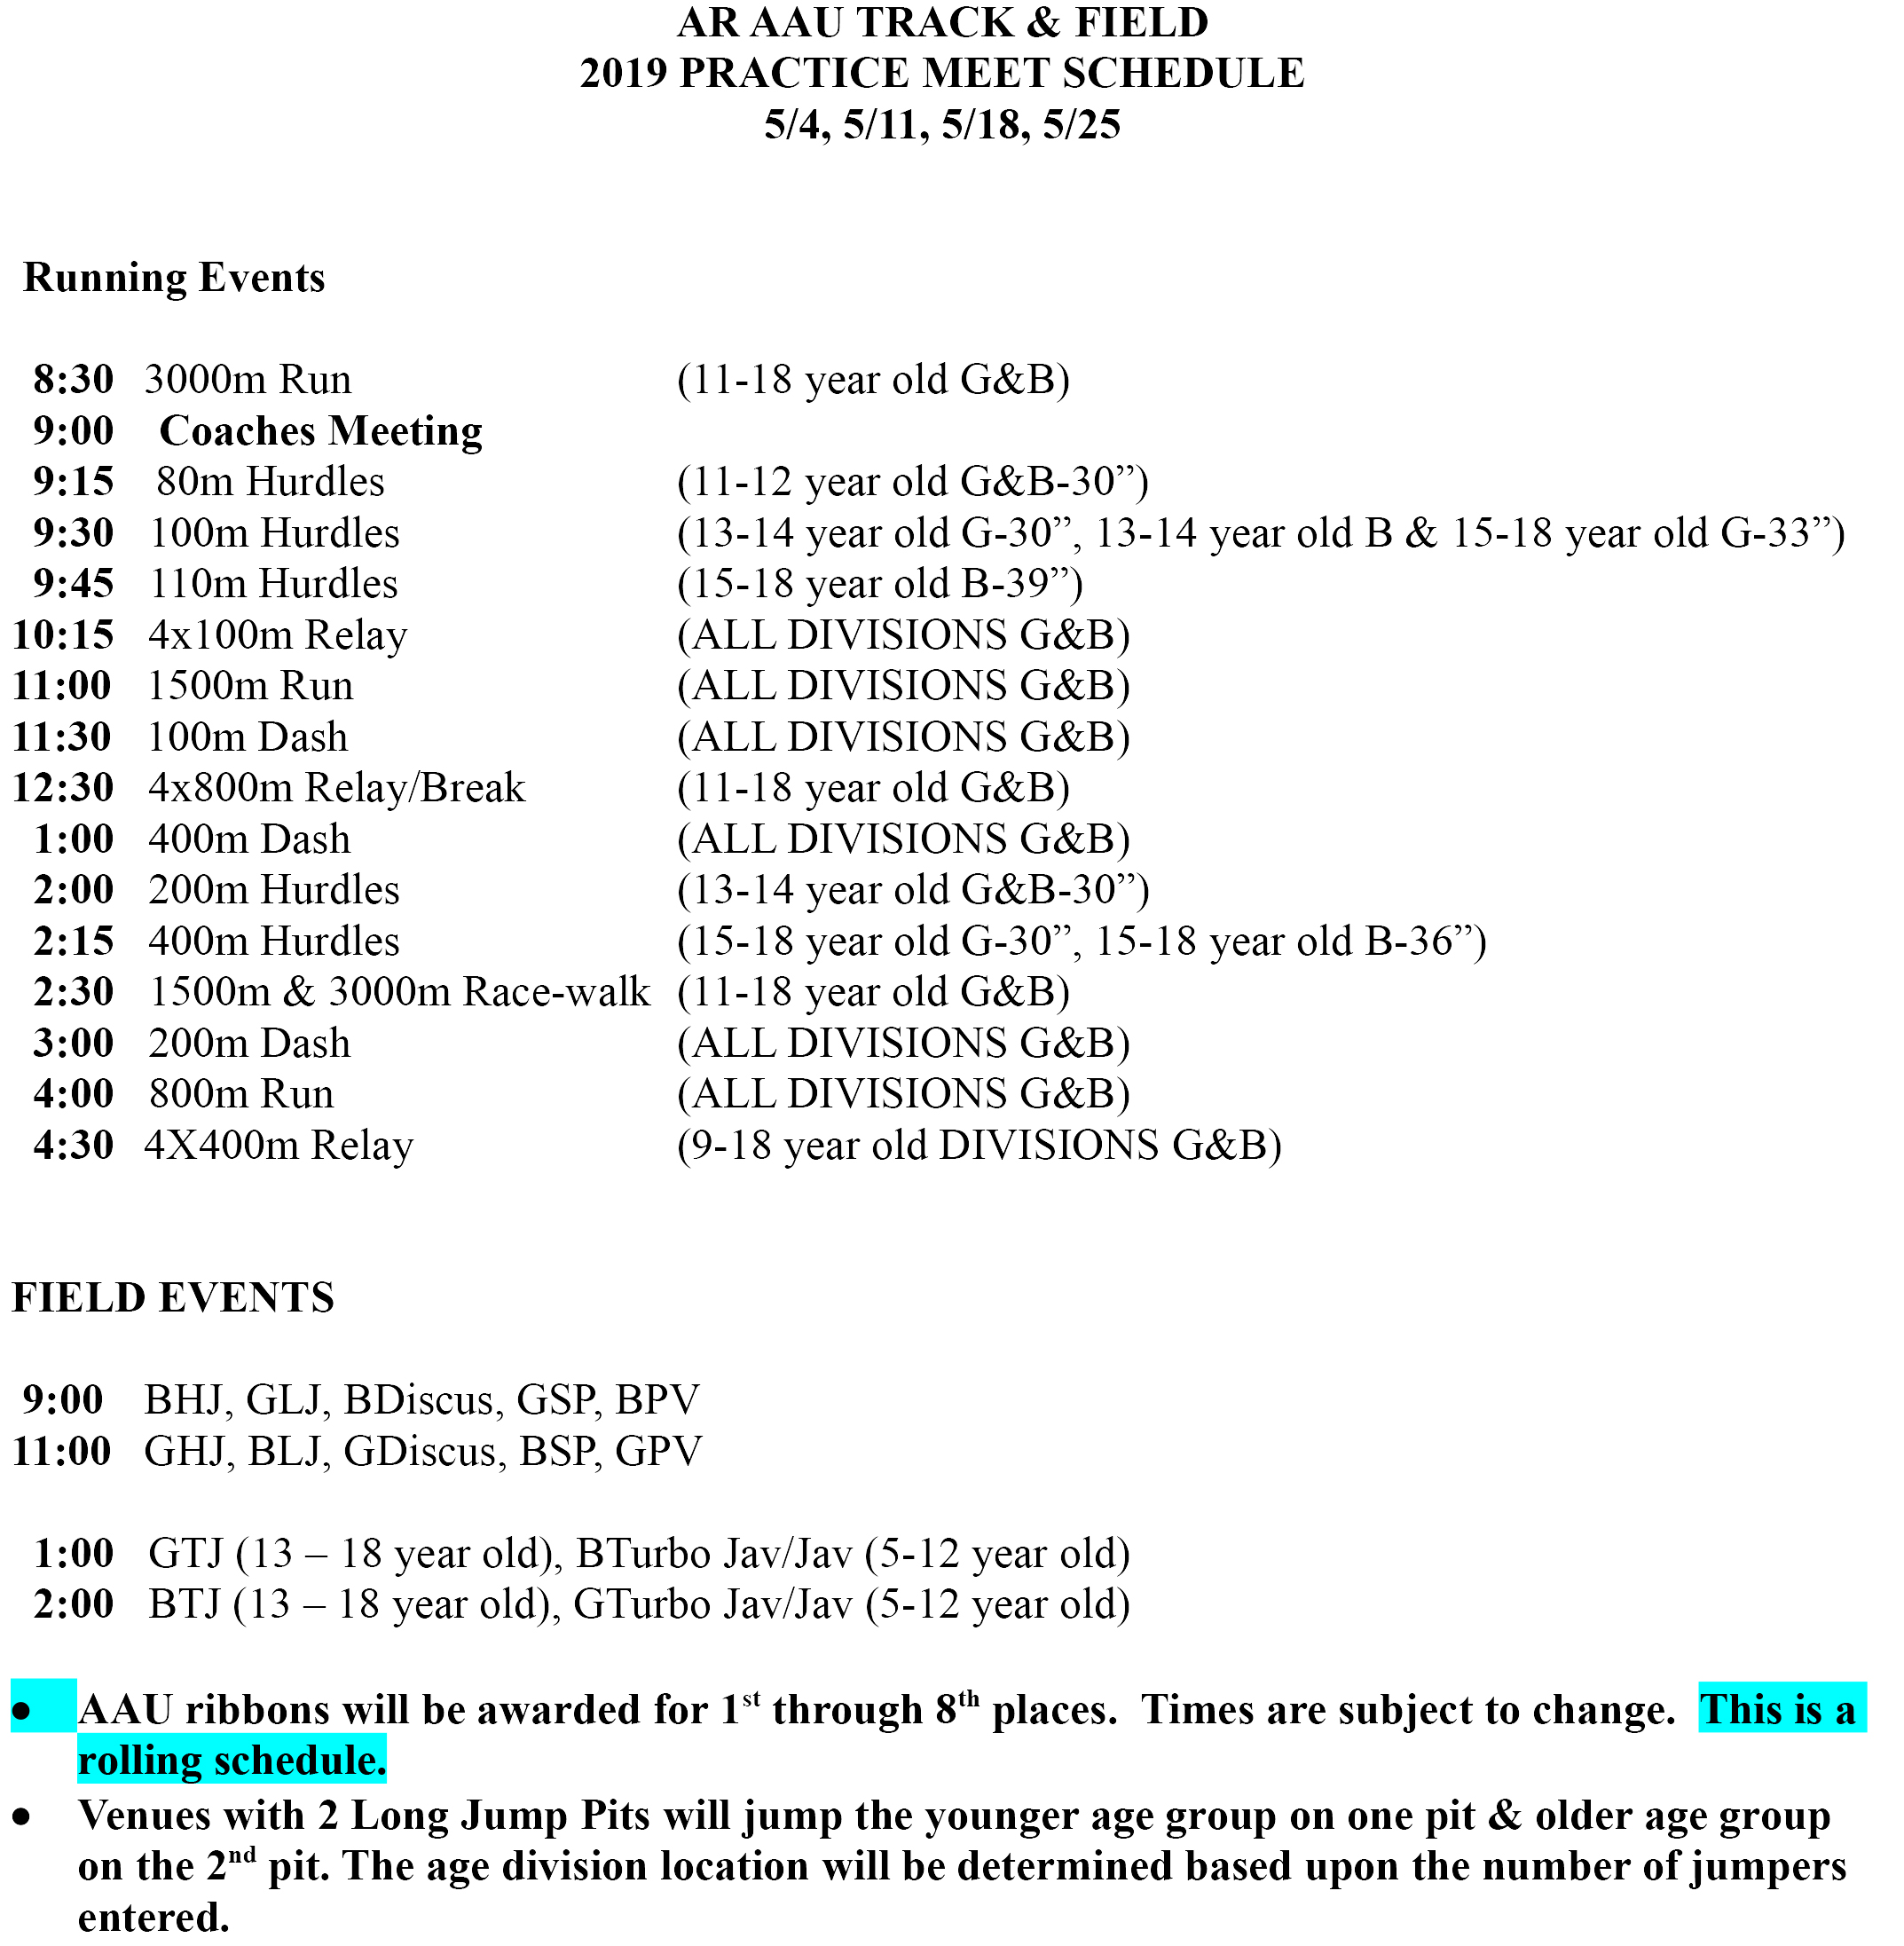 FINAL TRACK FIELD Practice Meet Schedule